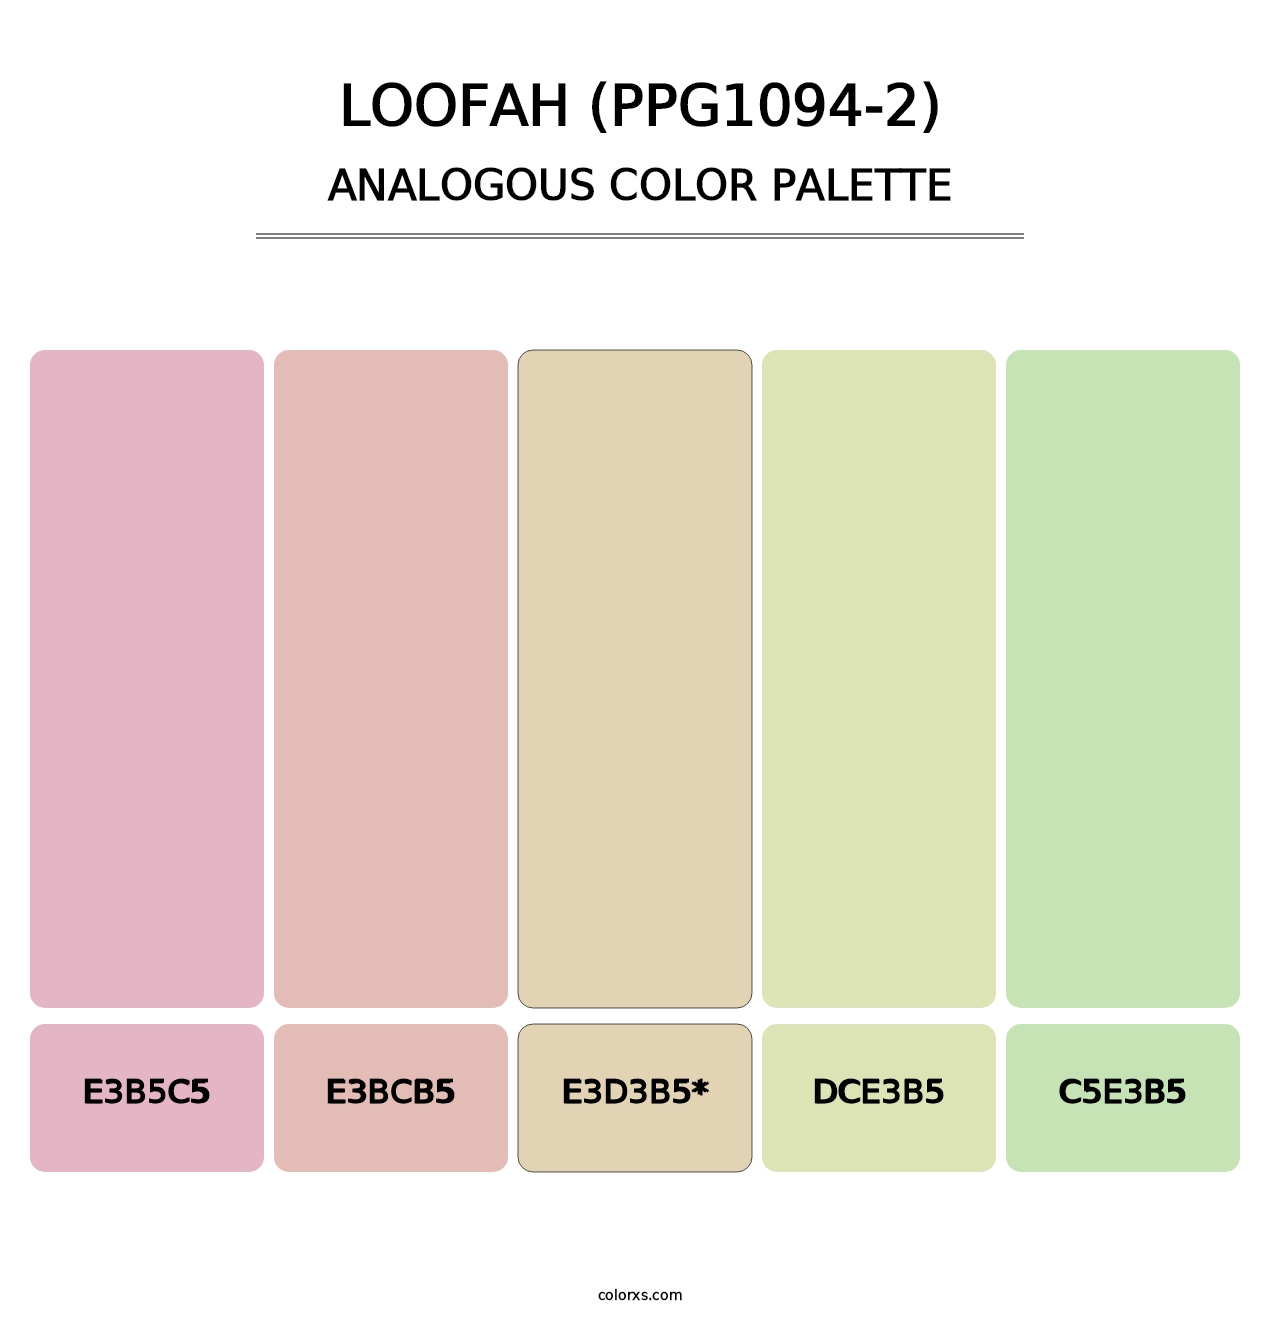 Loofah (PPG1094-2) - Analogous Color Palette